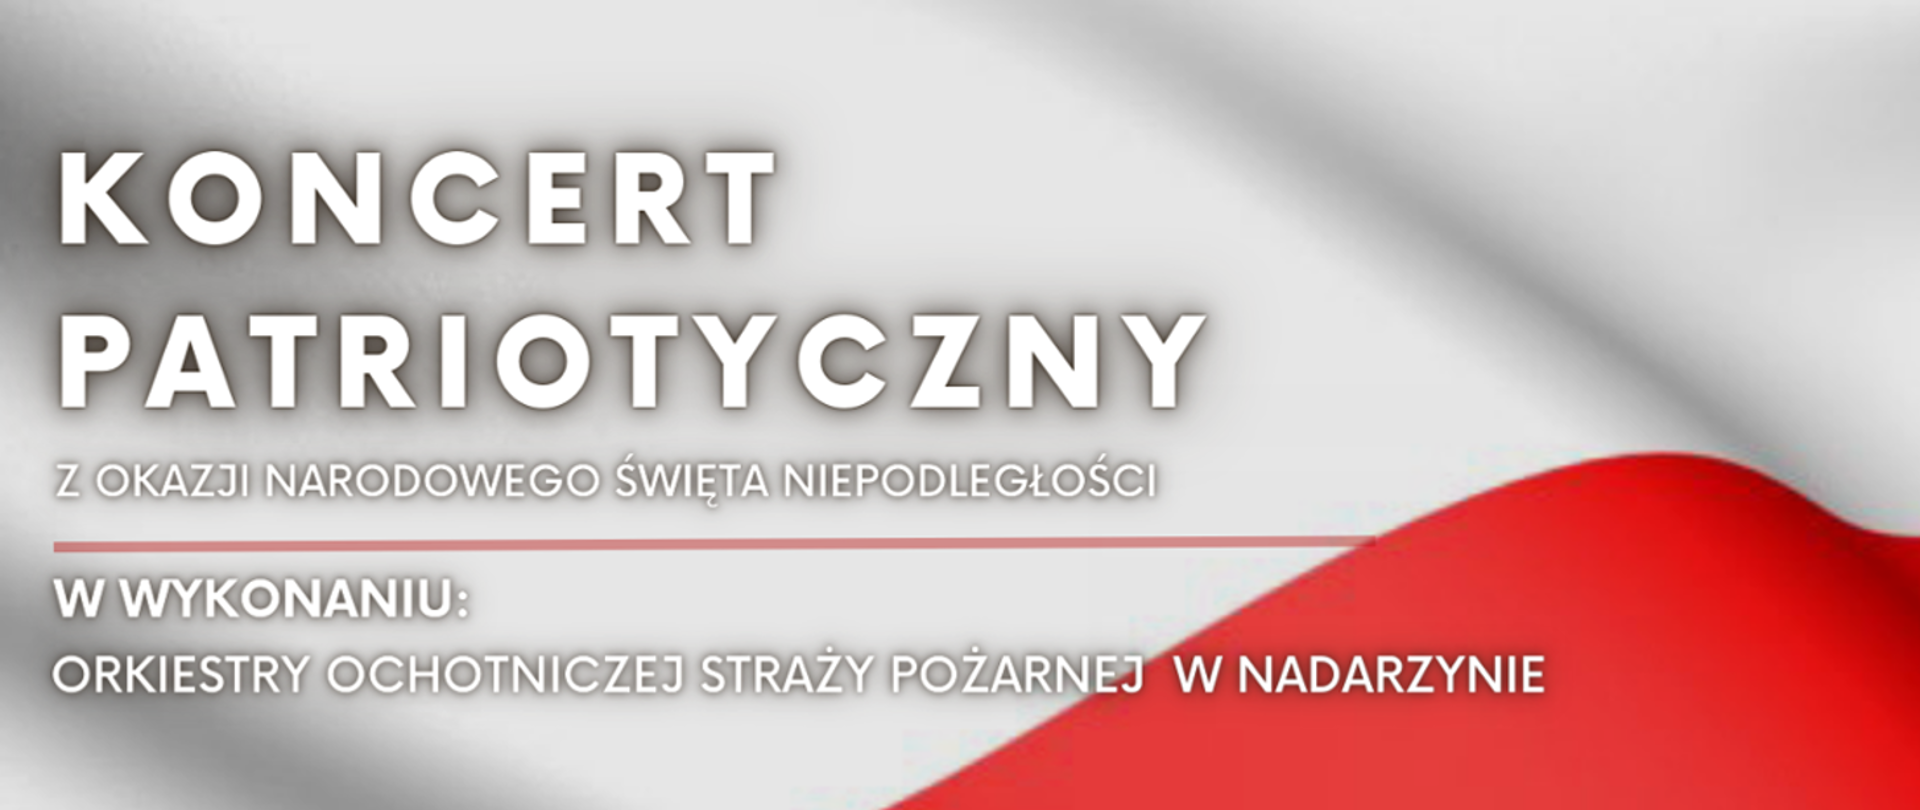 Baner z okazji Narodowego Święta Niepodległości o transmisji live koncertu patriotycznego. Napisy umieszczone są na tle emitującym flagę Polską